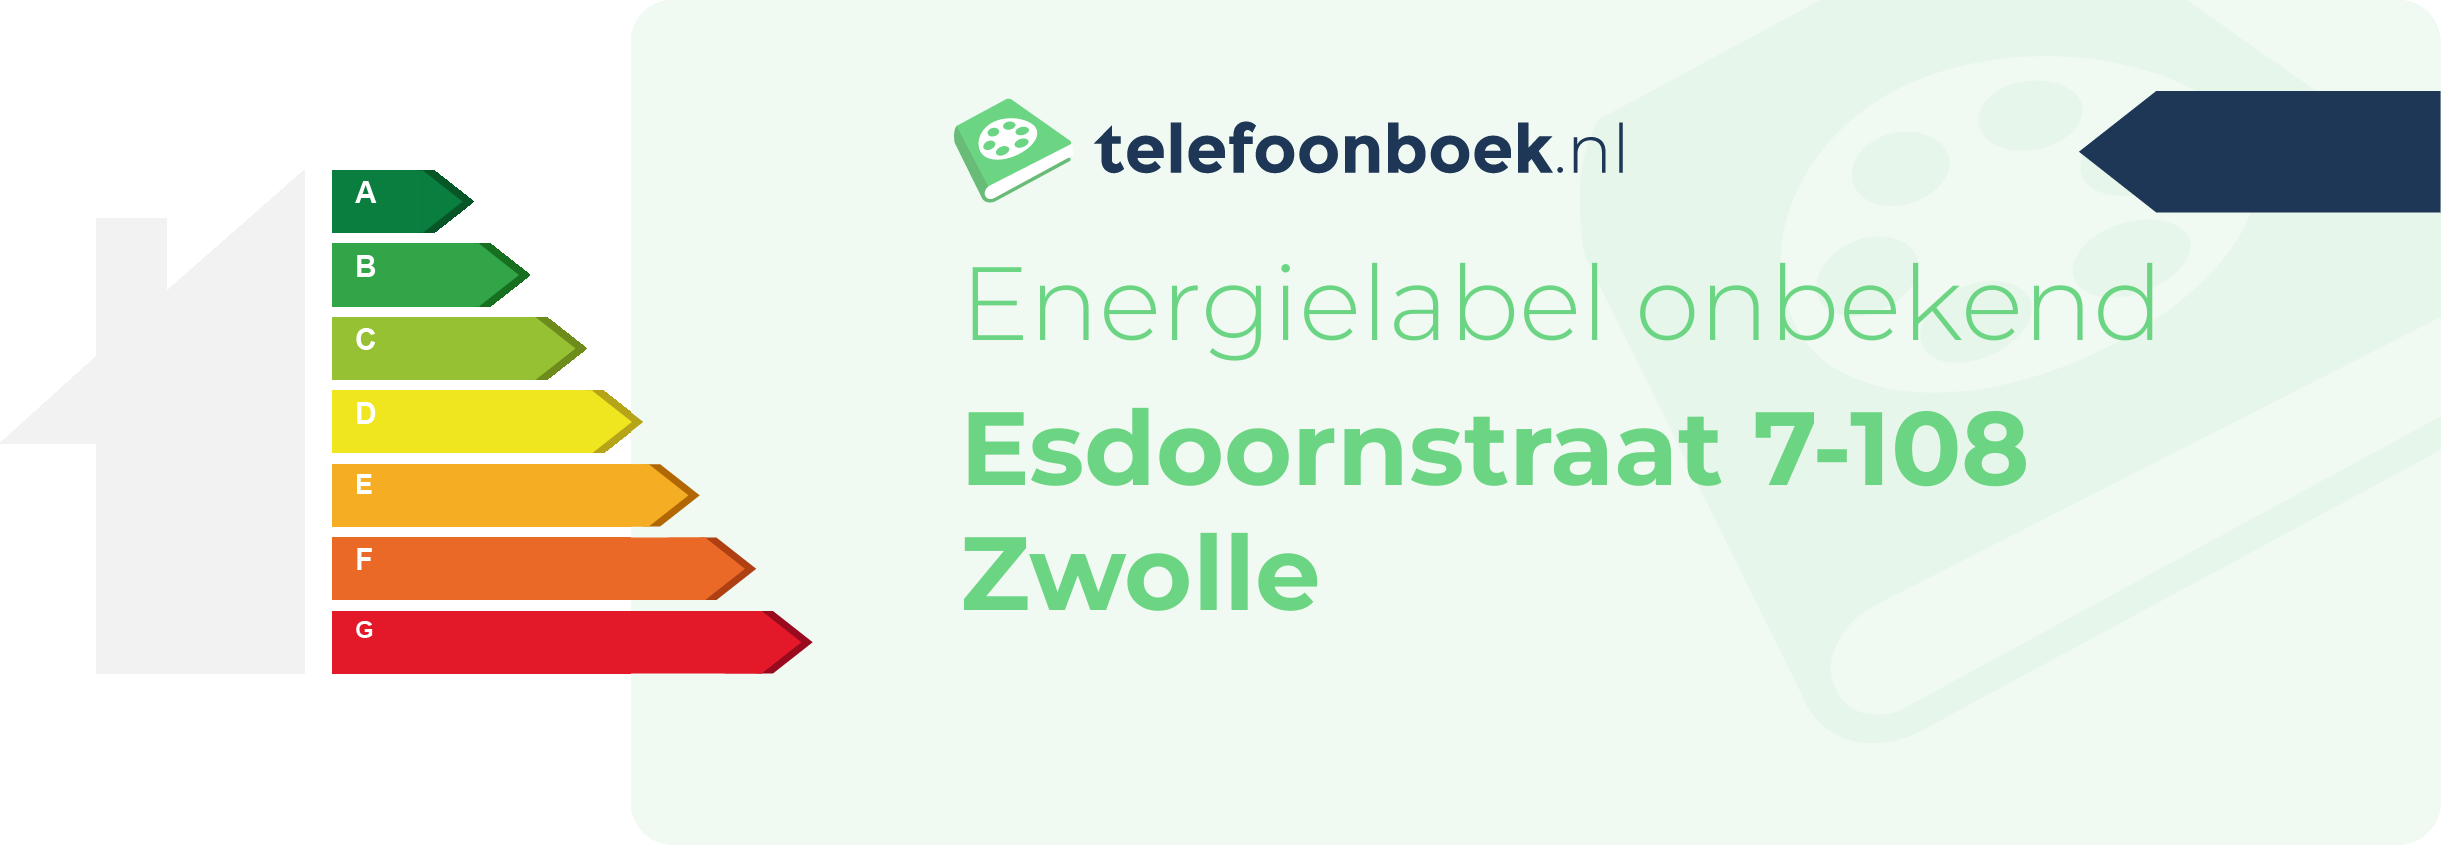 Energielabel Esdoornstraat 7-108 Zwolle